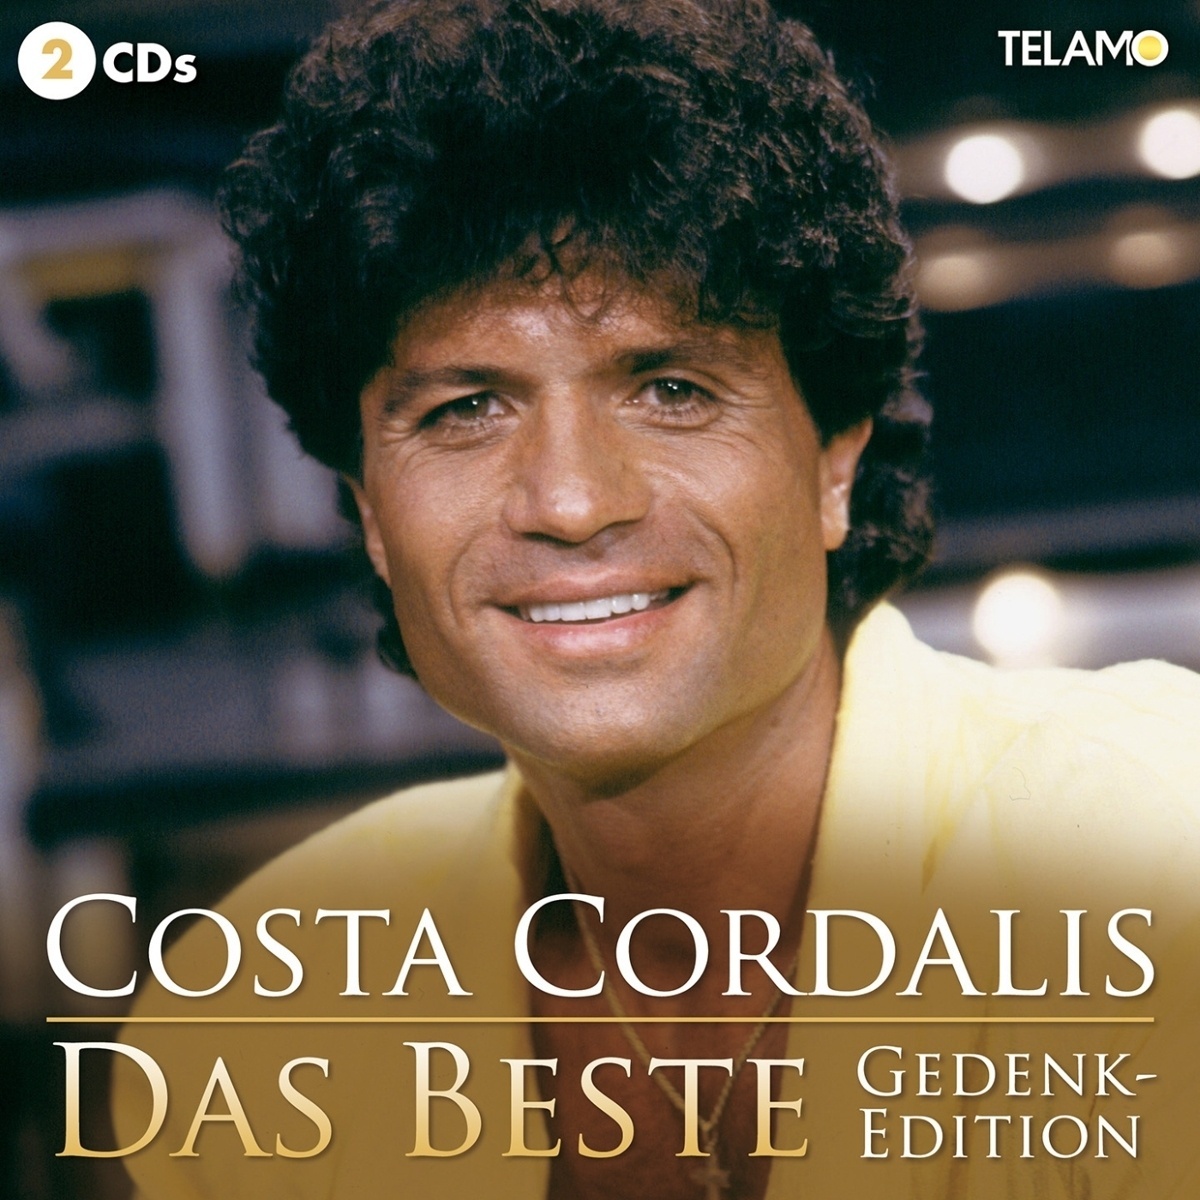 Das Beste (Gedenkedition  2 CDs) - Costa Cordalis. (CD)